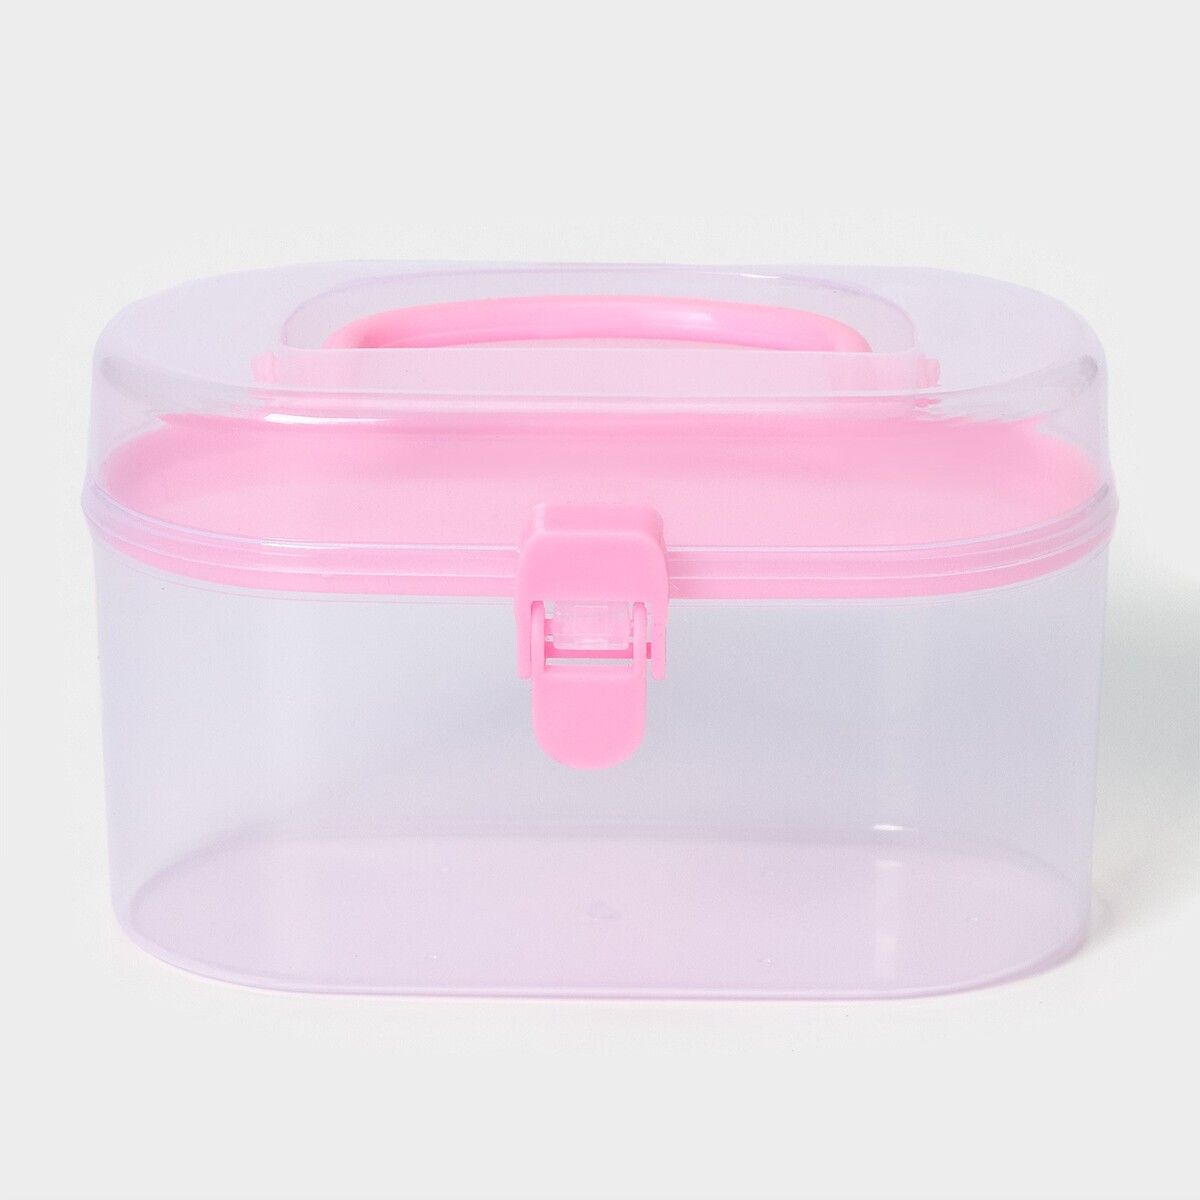 Органайзер для хранения пластиковый со вставкой, 12×7,5×7,5 см, цвет розовый конструктор пластиковый meli basic розовый 200 расширенный